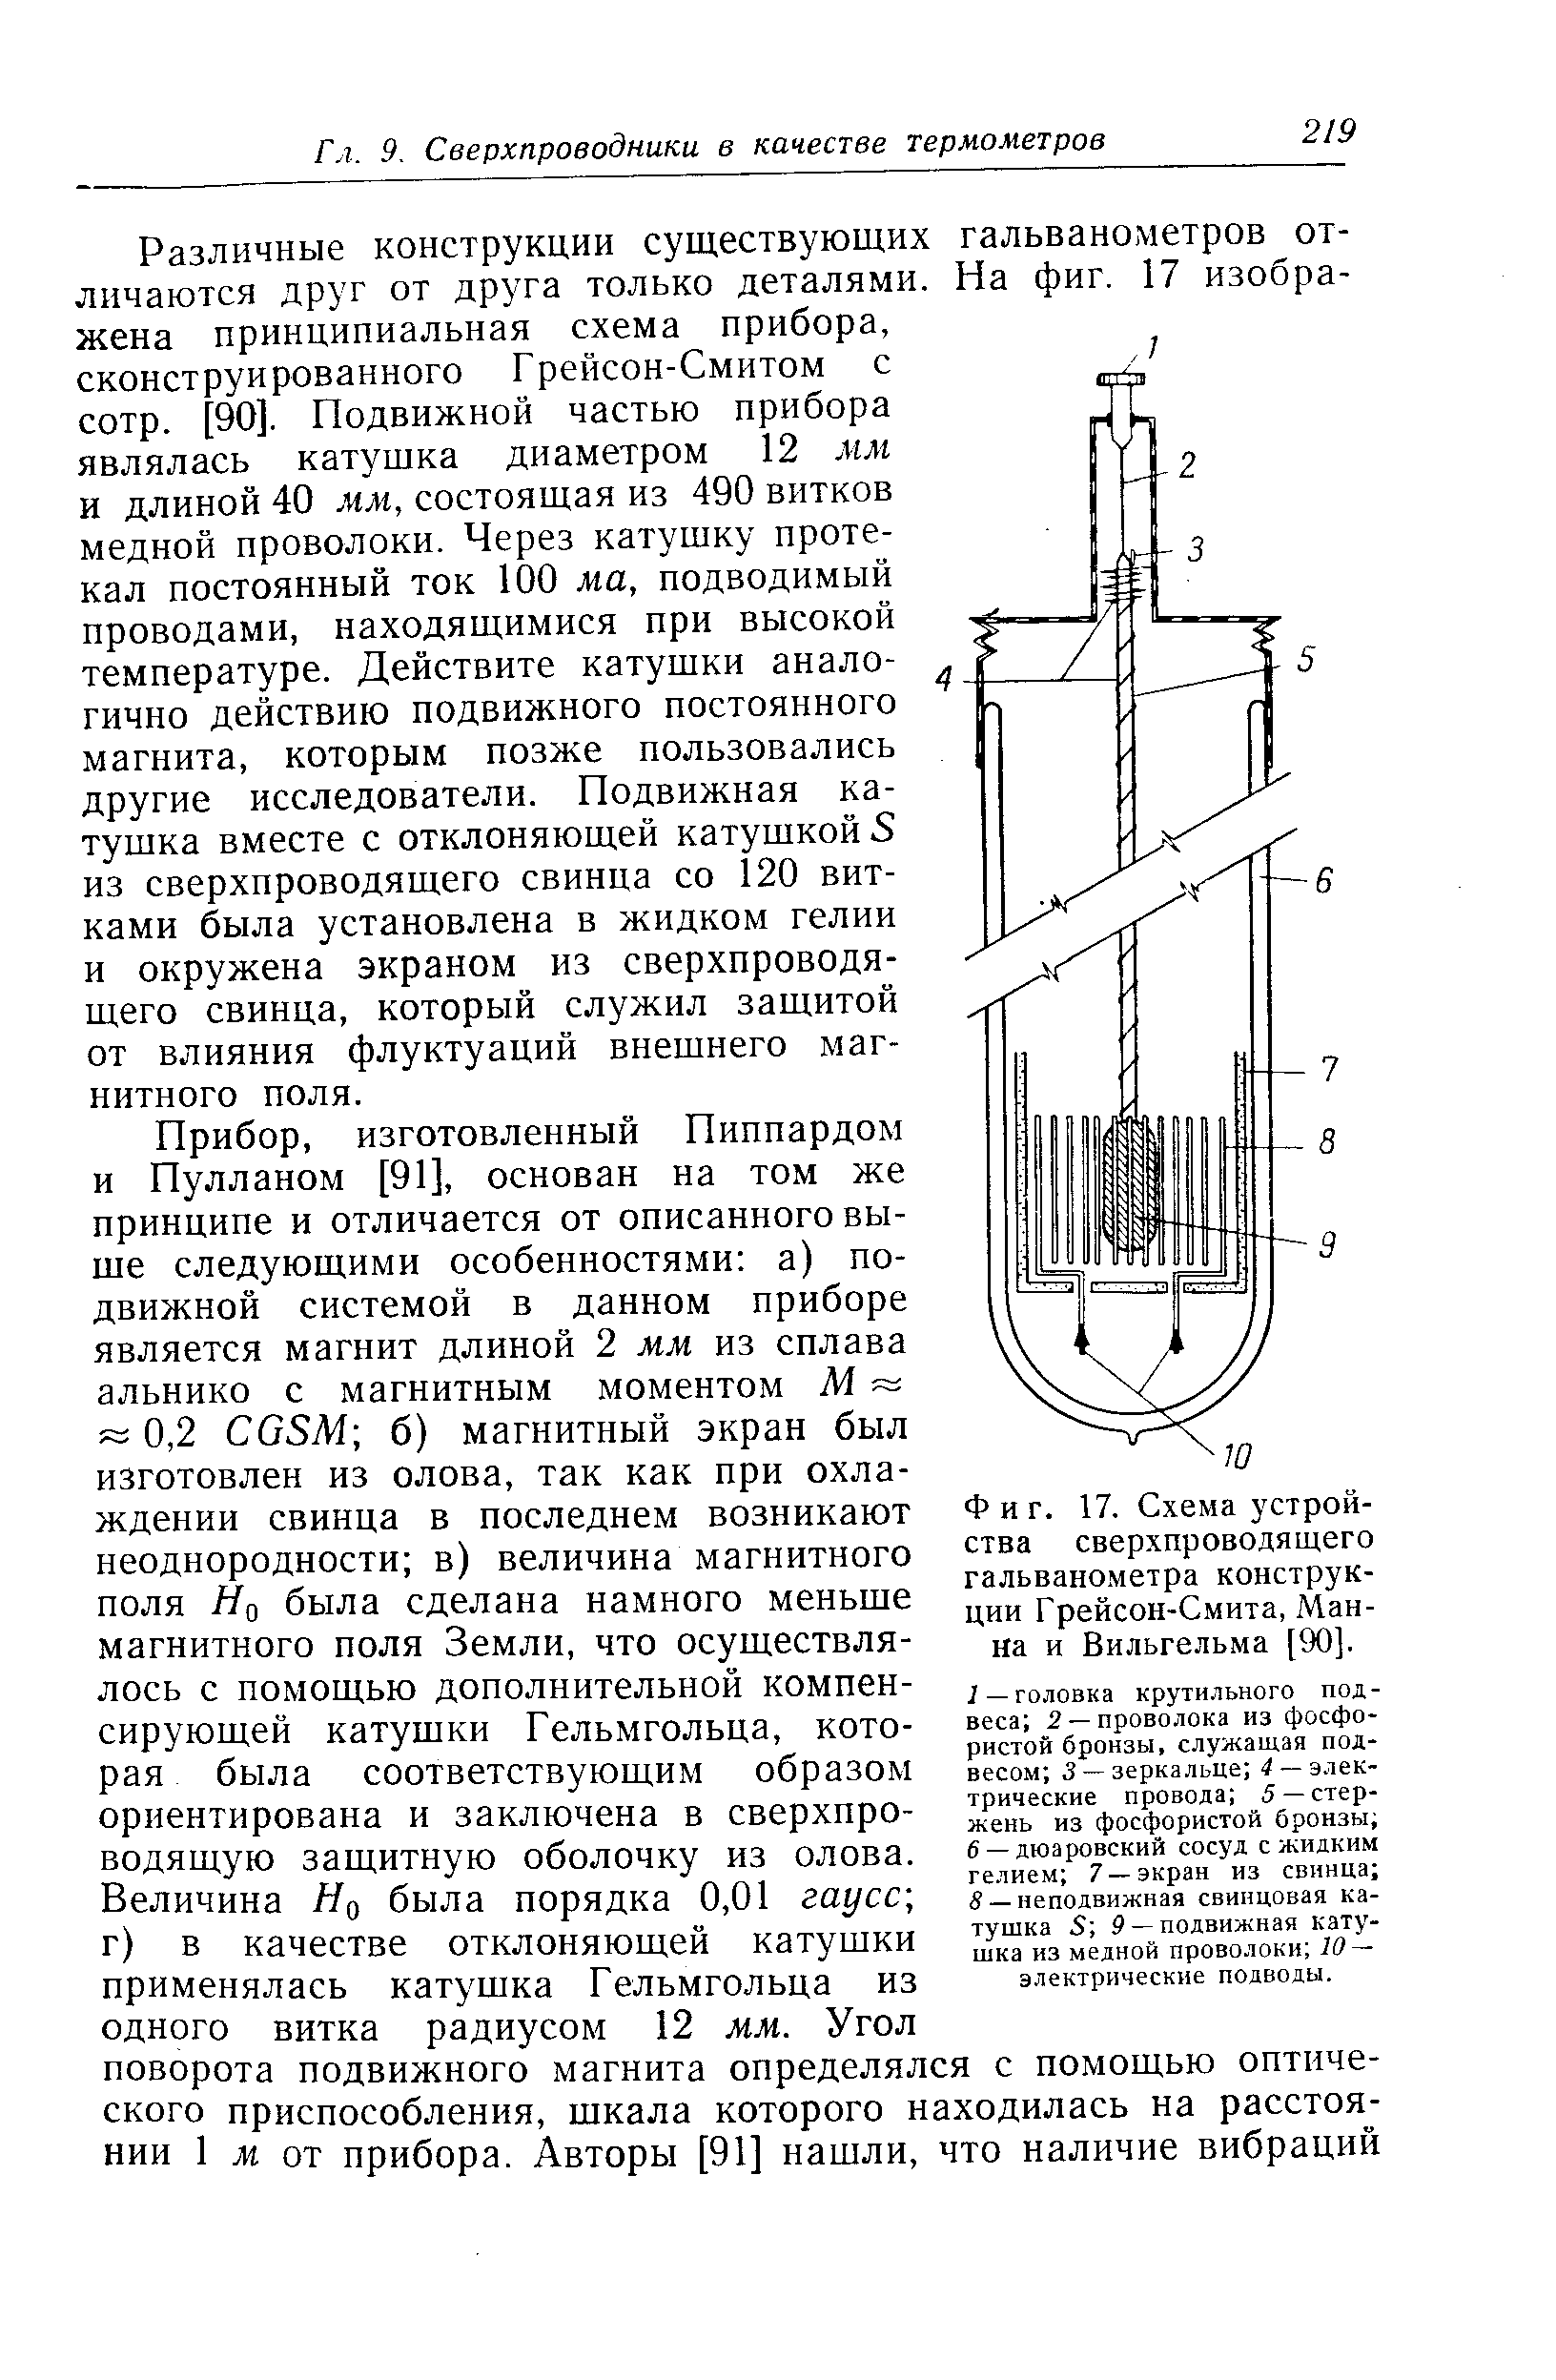 Фиг. 17. Схема устройства сверхпроводящего гальванометра конструкции Грейсон-Смита, Манна и Вильгельма [90].
